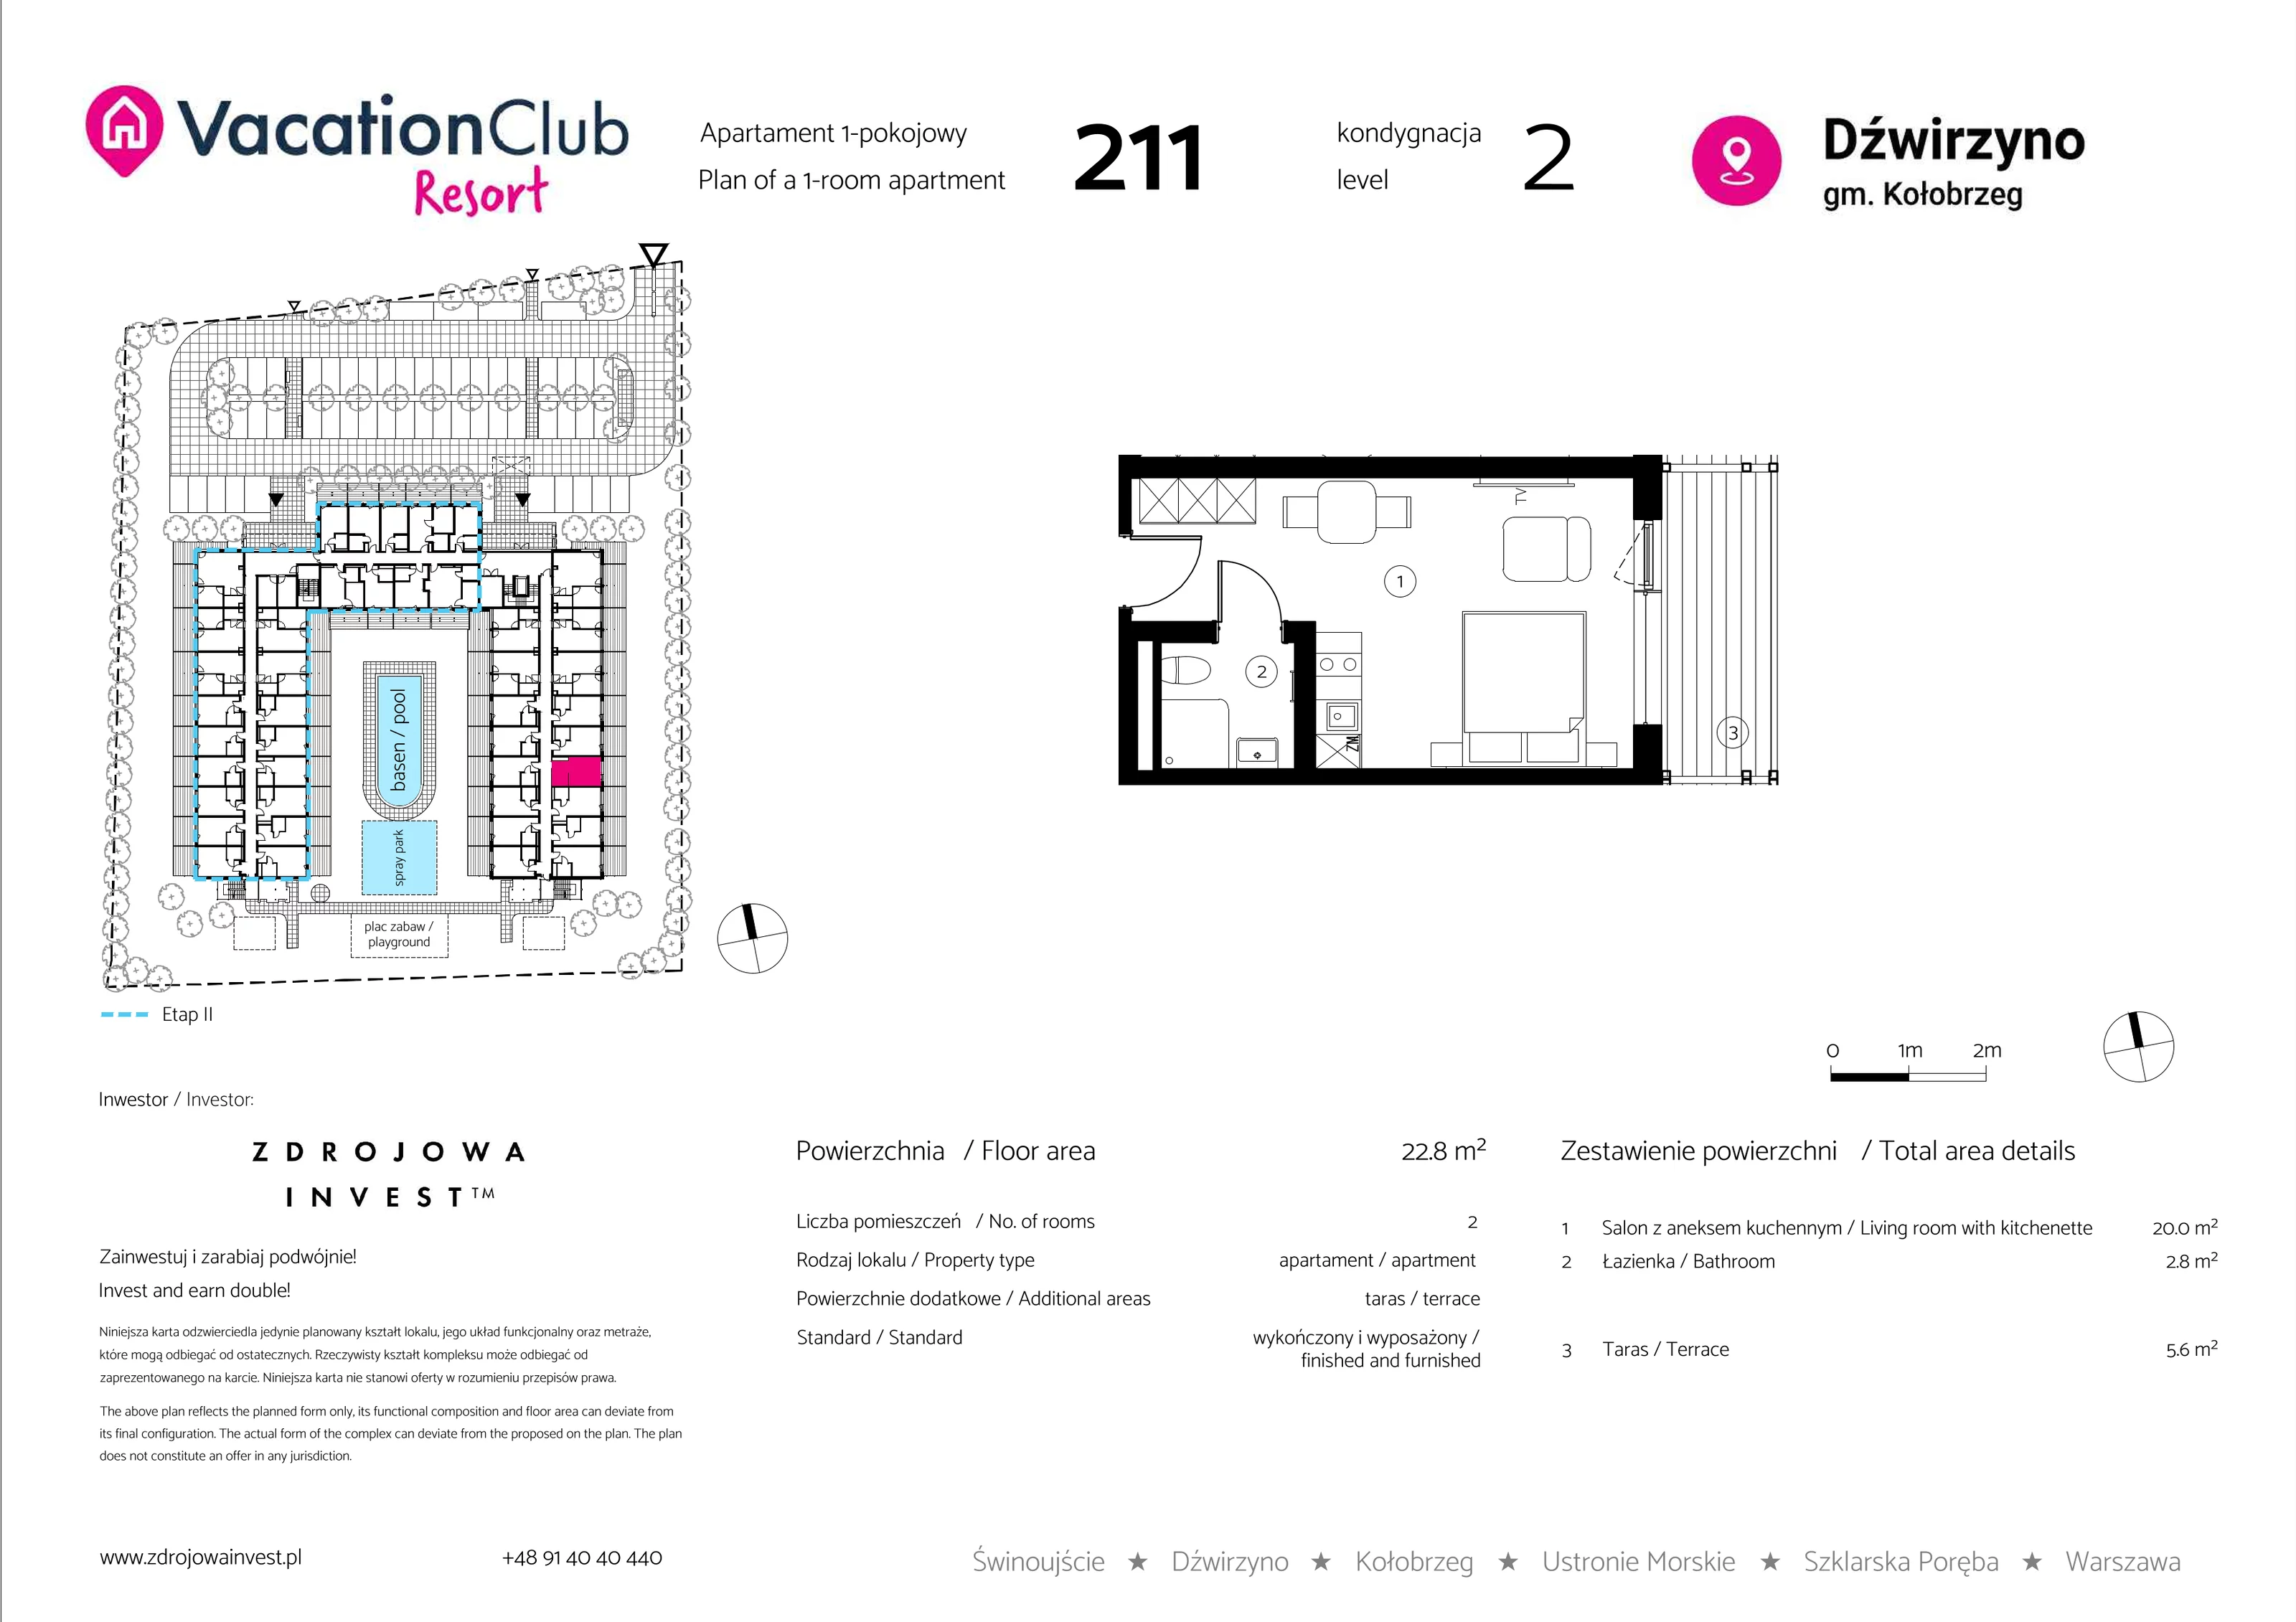 Apartament 22,80 m², piętro 1, oferta nr 211, Vacation Club Resort - apartamenty wakacyjne, Dźwirzyno, ul. Wczasowa 8